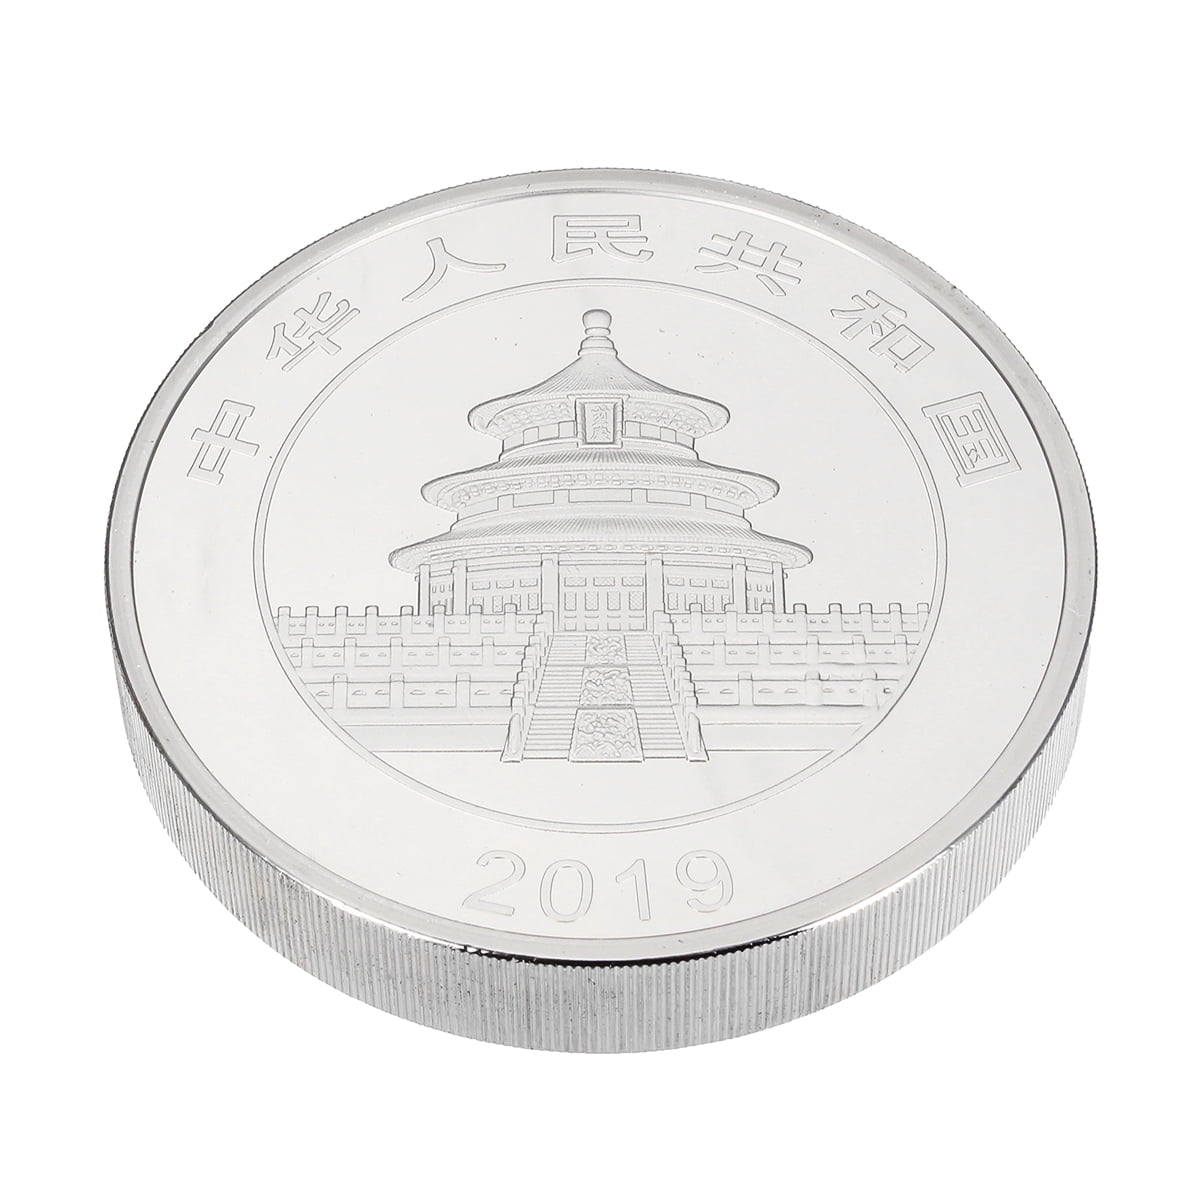 2019 China Panda Commemorative Coin Gold Plated Souvenir Coin Souvenir Gifts TB 